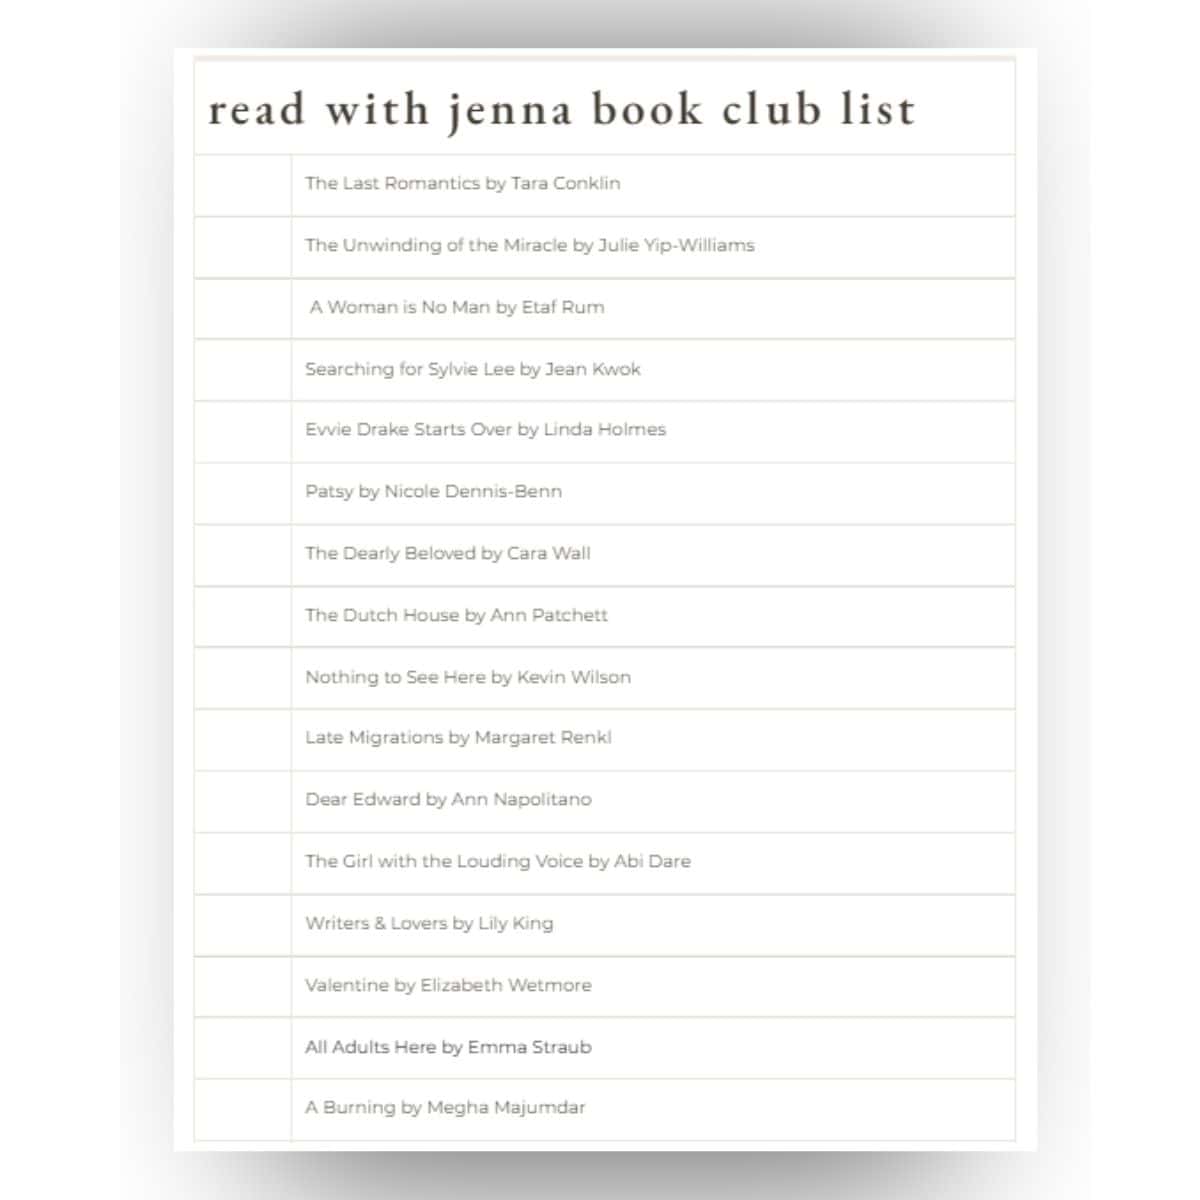 read with jenna book club list pdf.